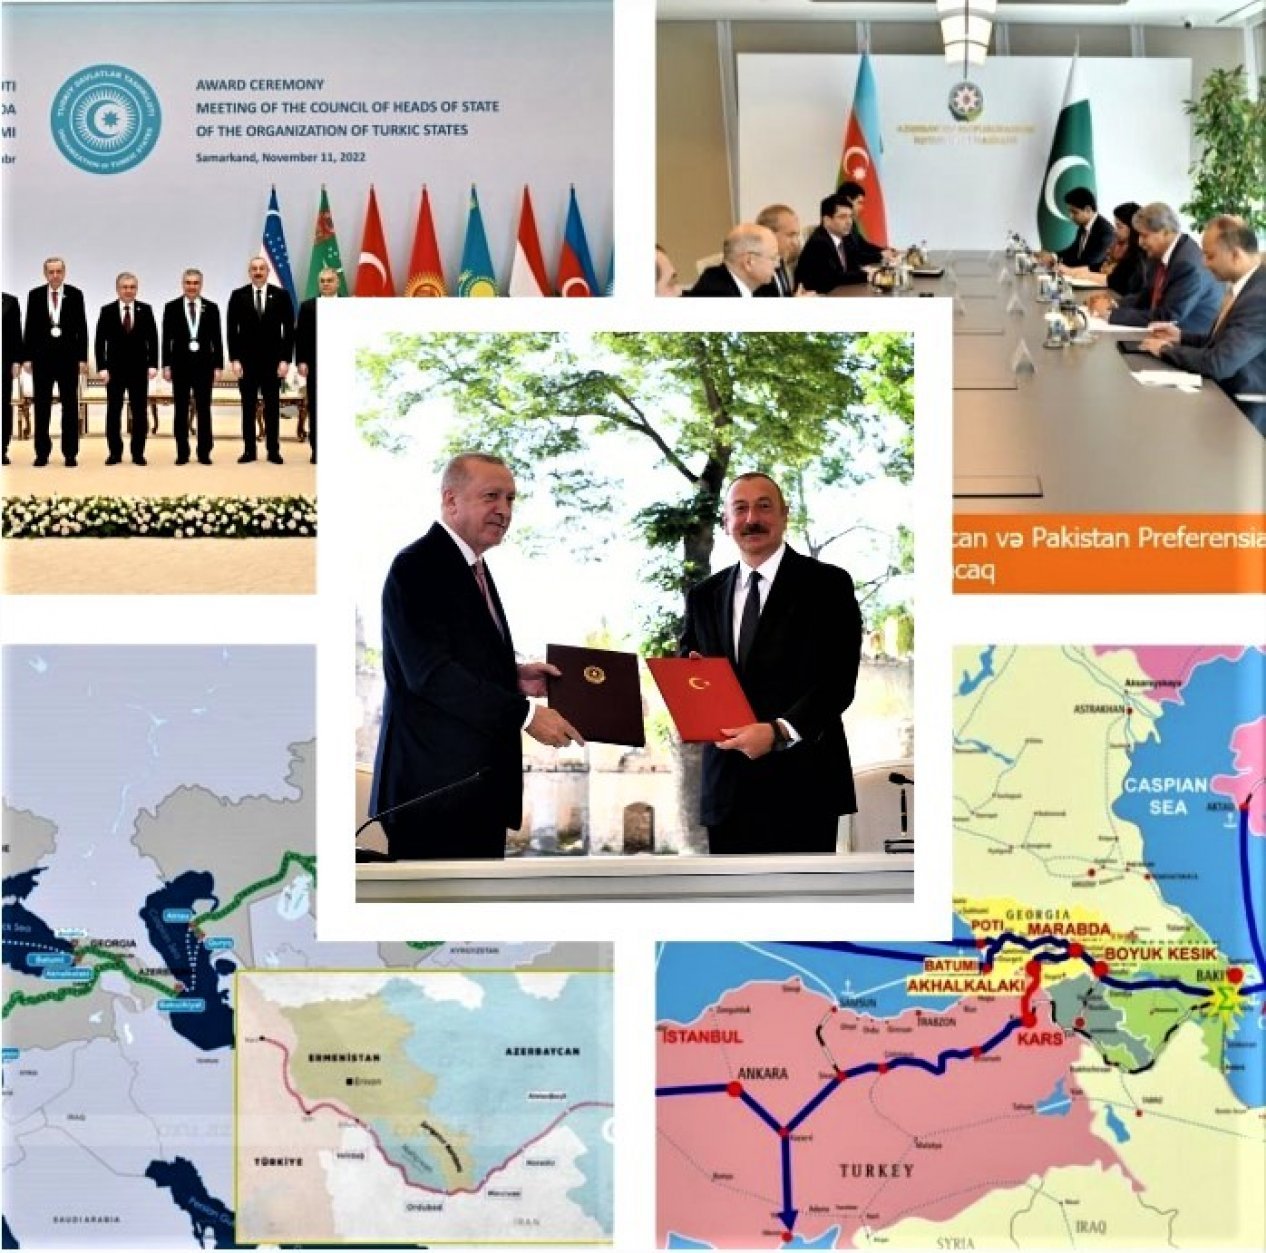 Преференциальное соглашение - создание нового свободного таможенного союза тюркских государств